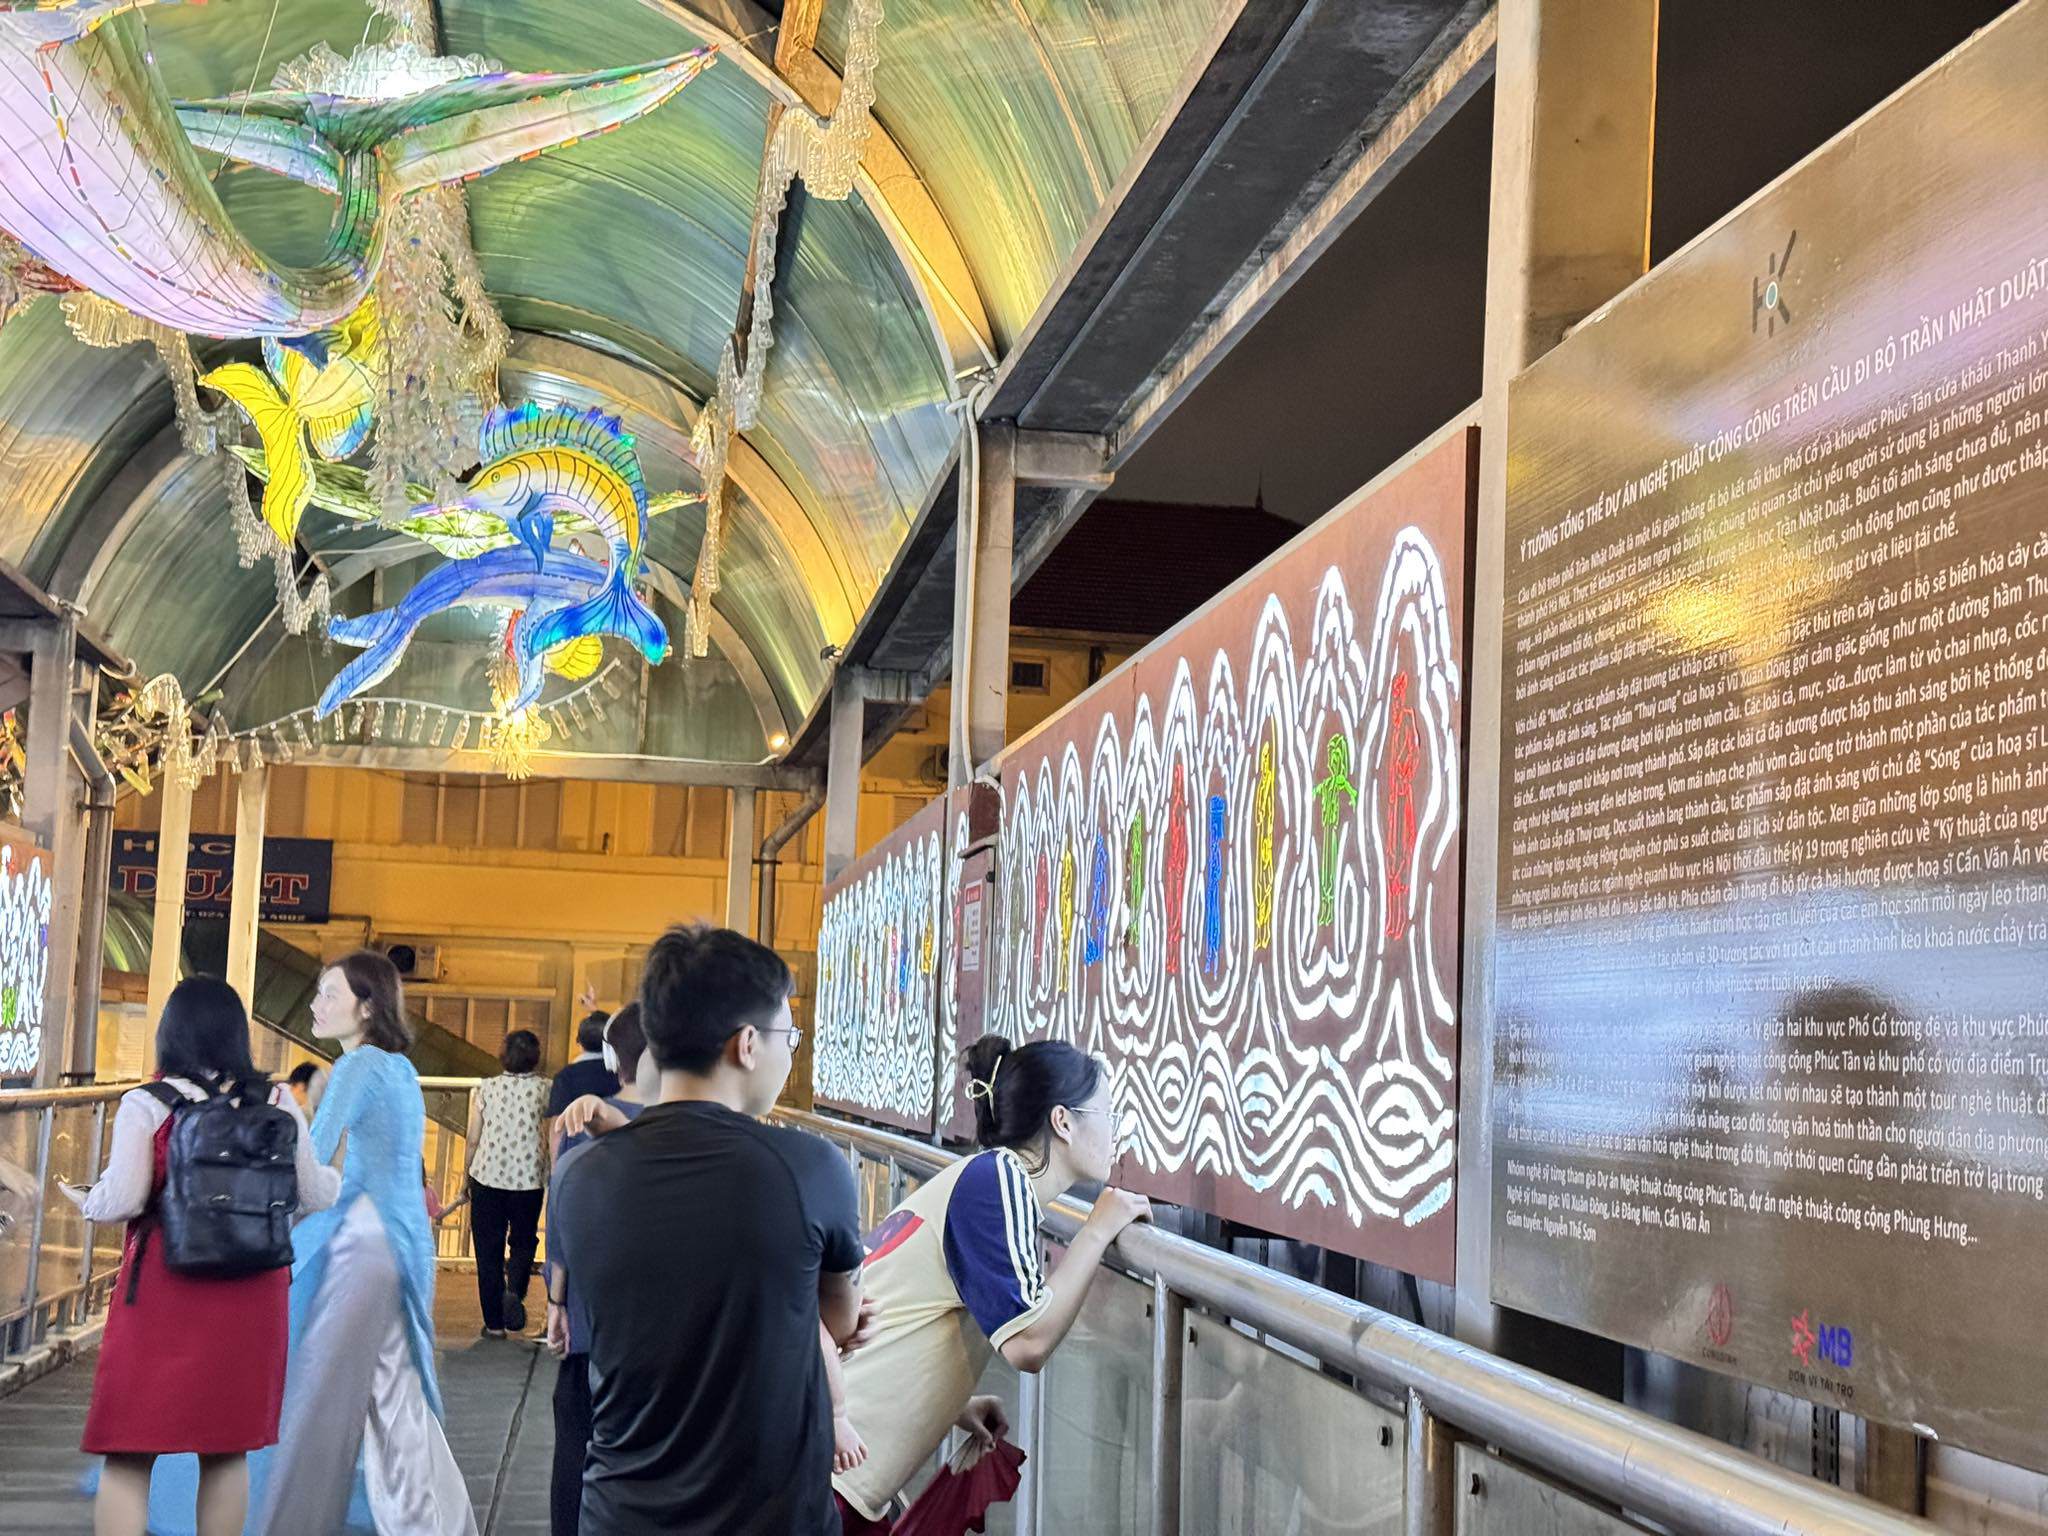 Dự án cải tạo, trang hoàng trên cầu đi bộ Trần Nhật Duật được thực hiện bởi nhóm họa sĩ từng tham gia nhiều dự án công trình công cộng nghệ thuật như: phố Phúc Tân, phố Phùng Hưng,...